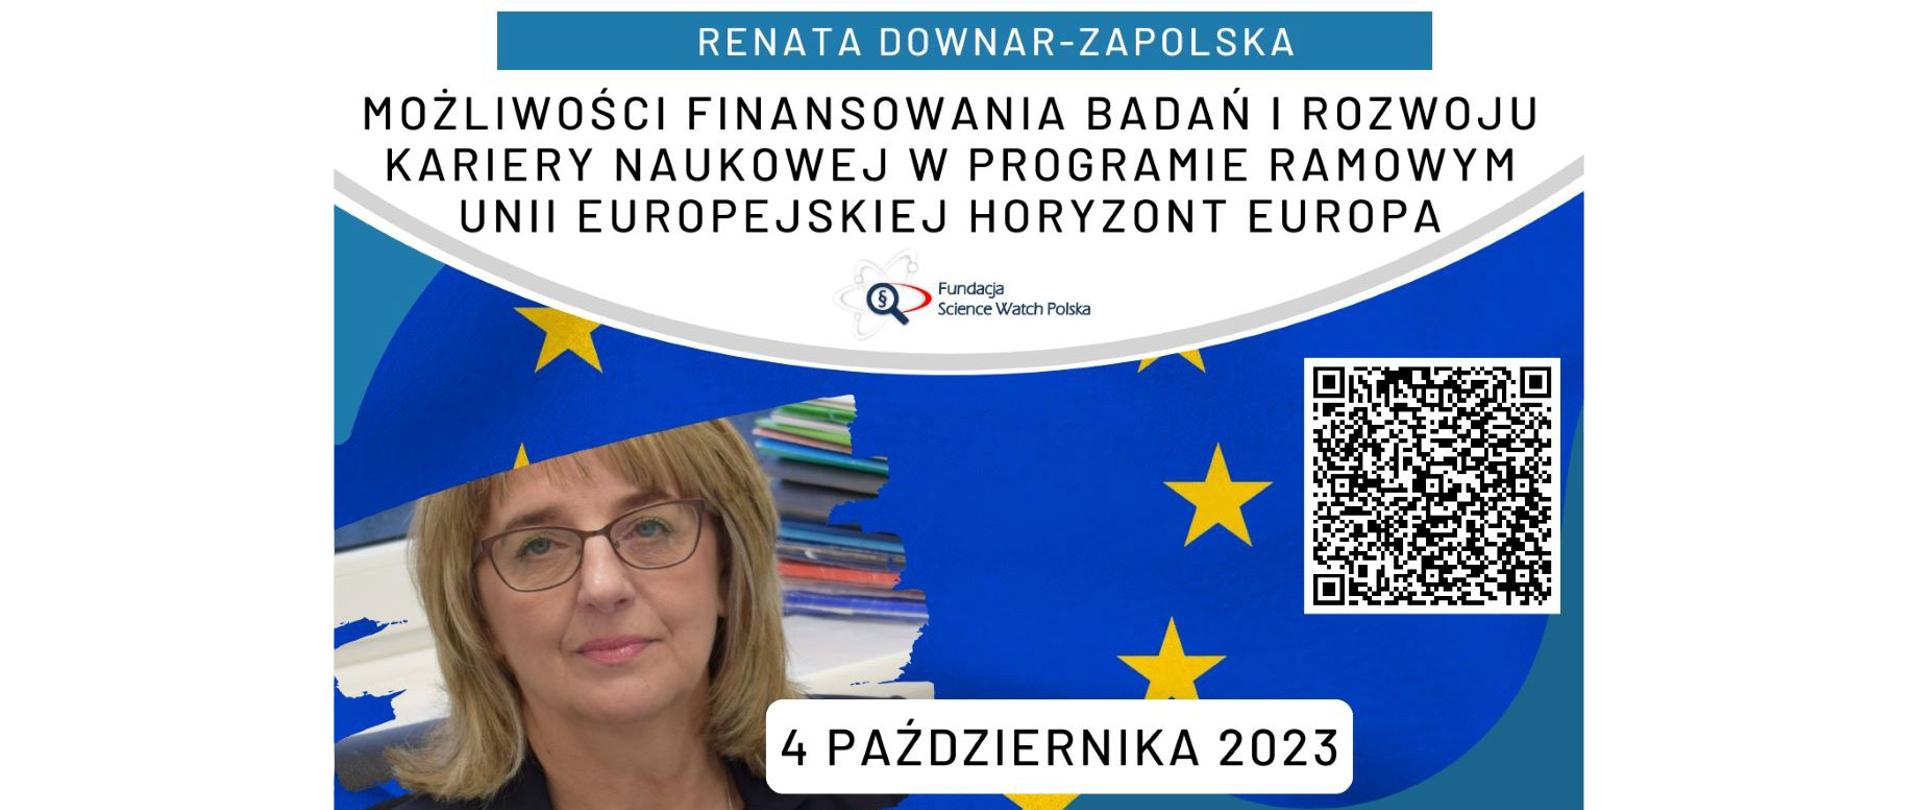 Webinar: Możliwości finansowania badań i rozwoju kariery naukowej w programie ramowym Unii Europejskiej HORYZONT EUROPA